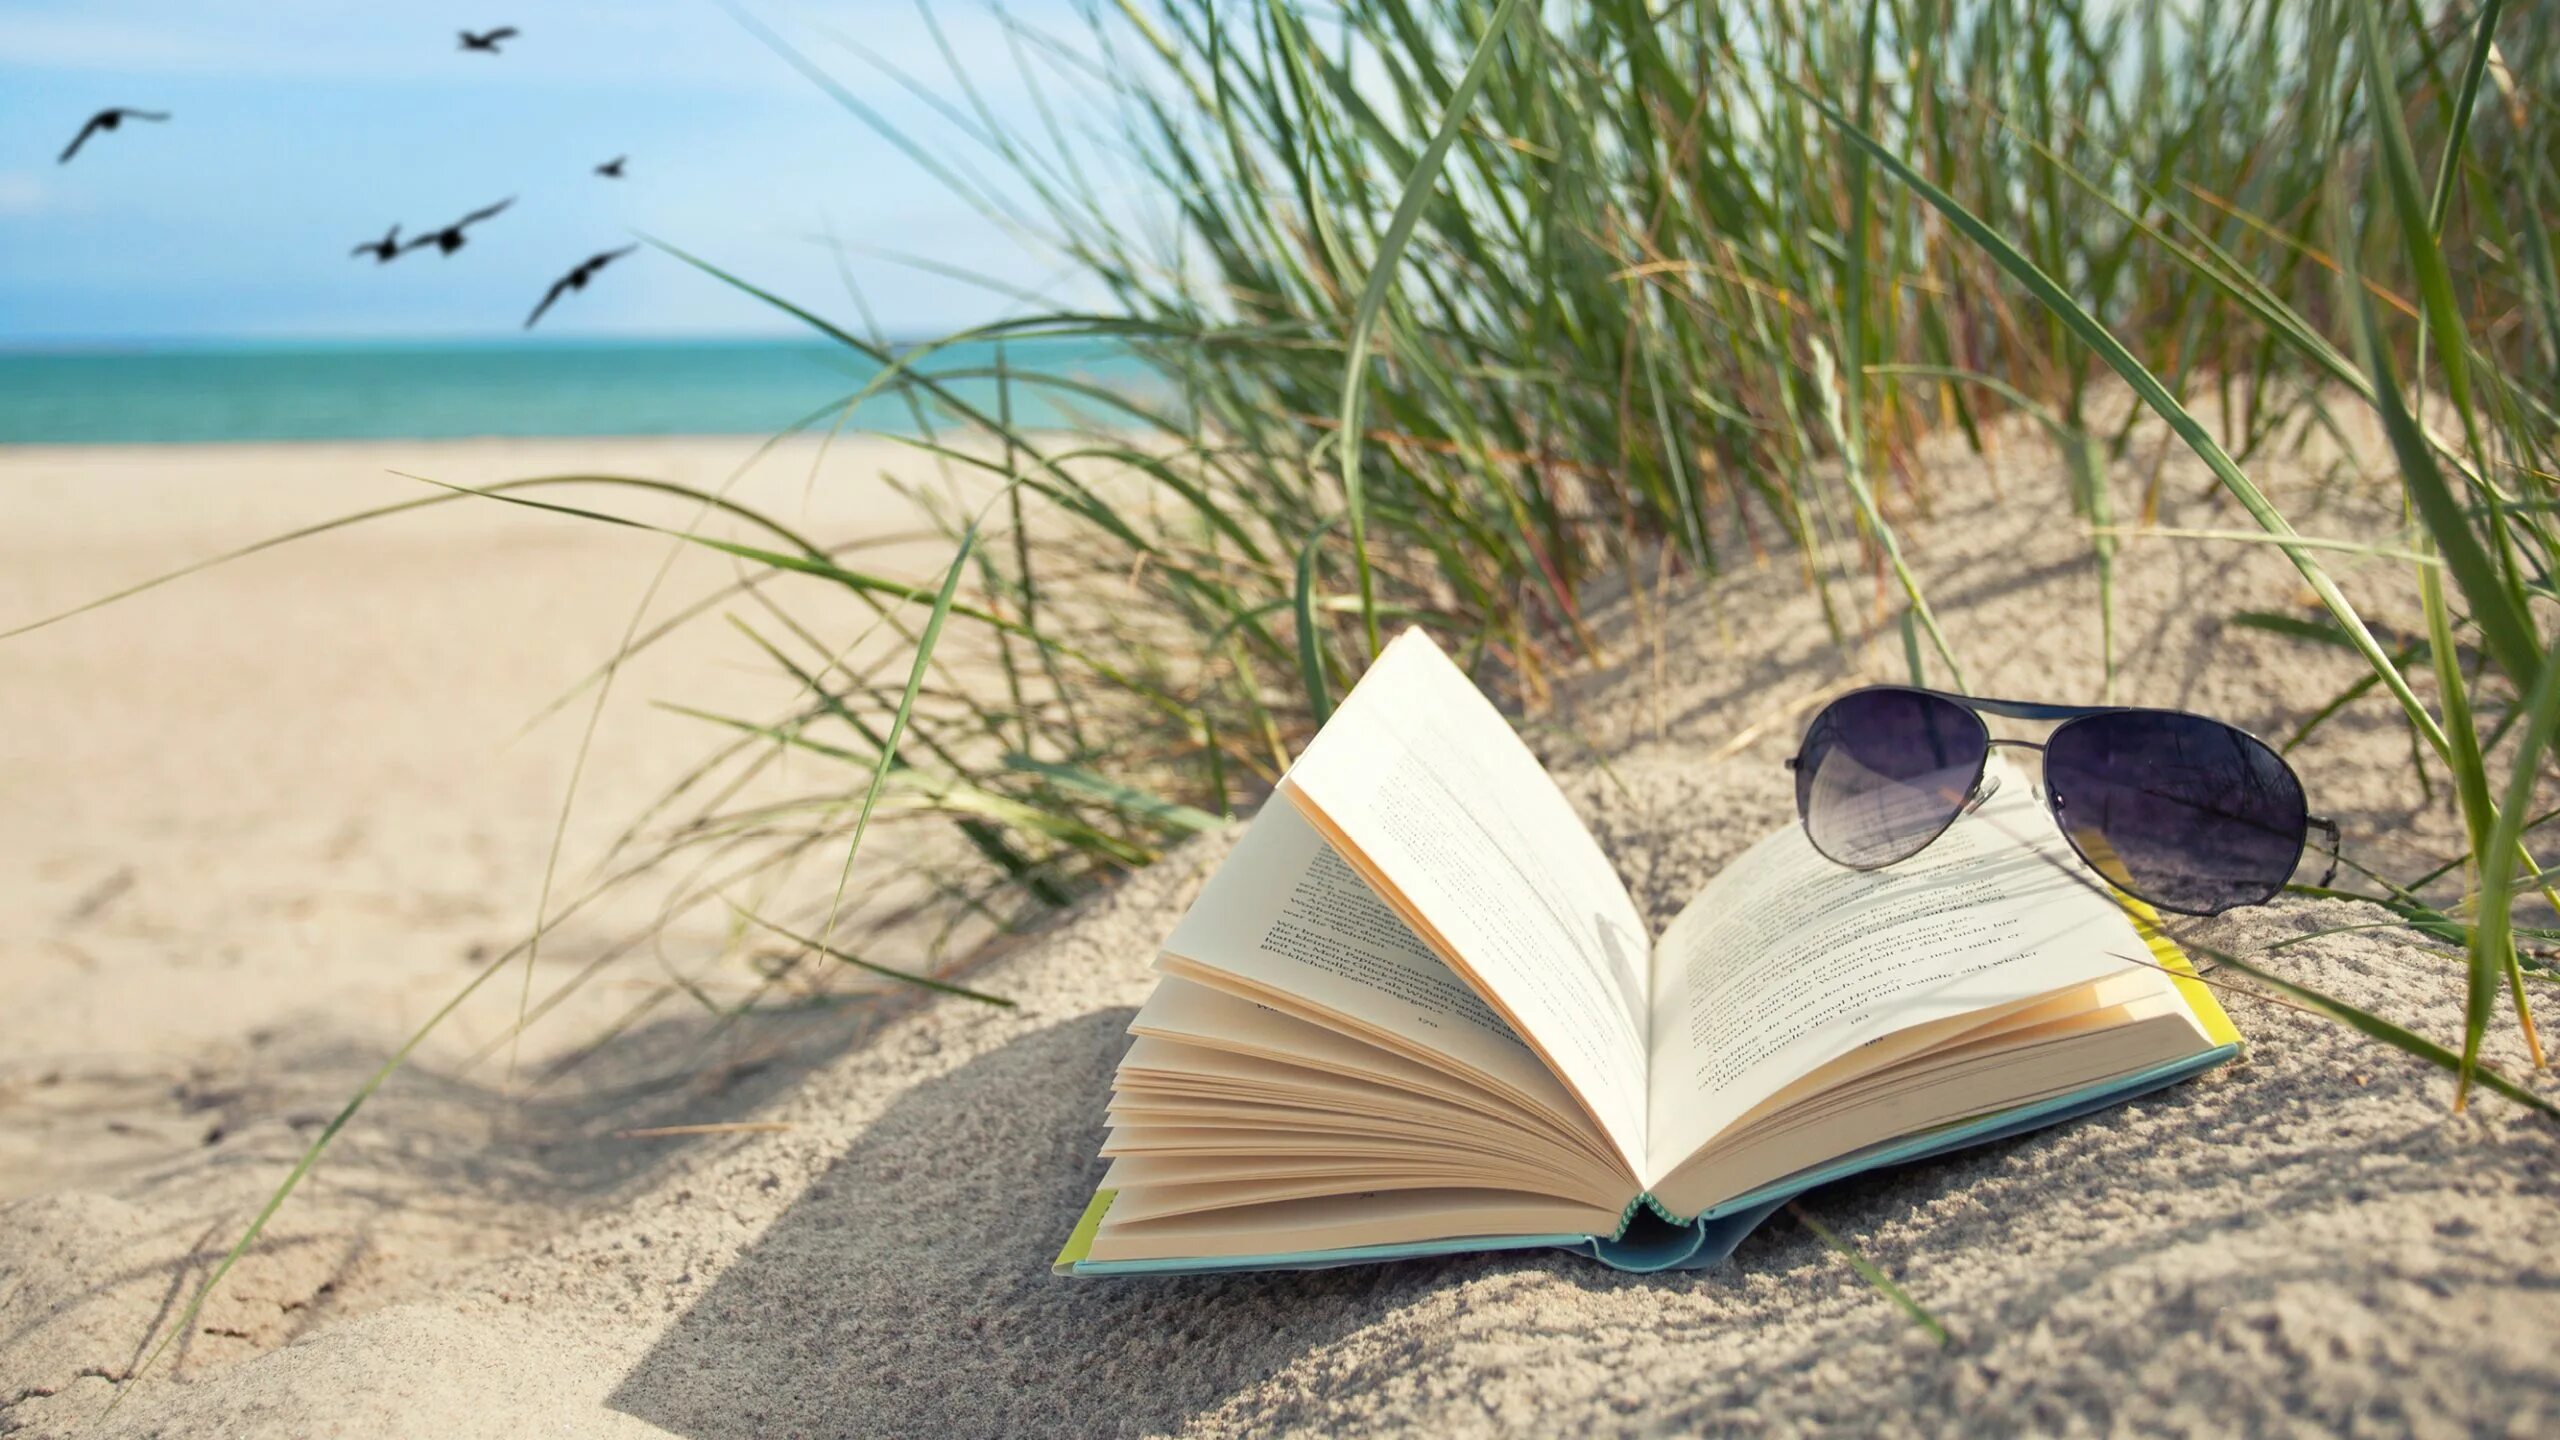 My summer book. Лето с книгой. Книга на песке. Лето книга фон. Картинки чтение на пляже.